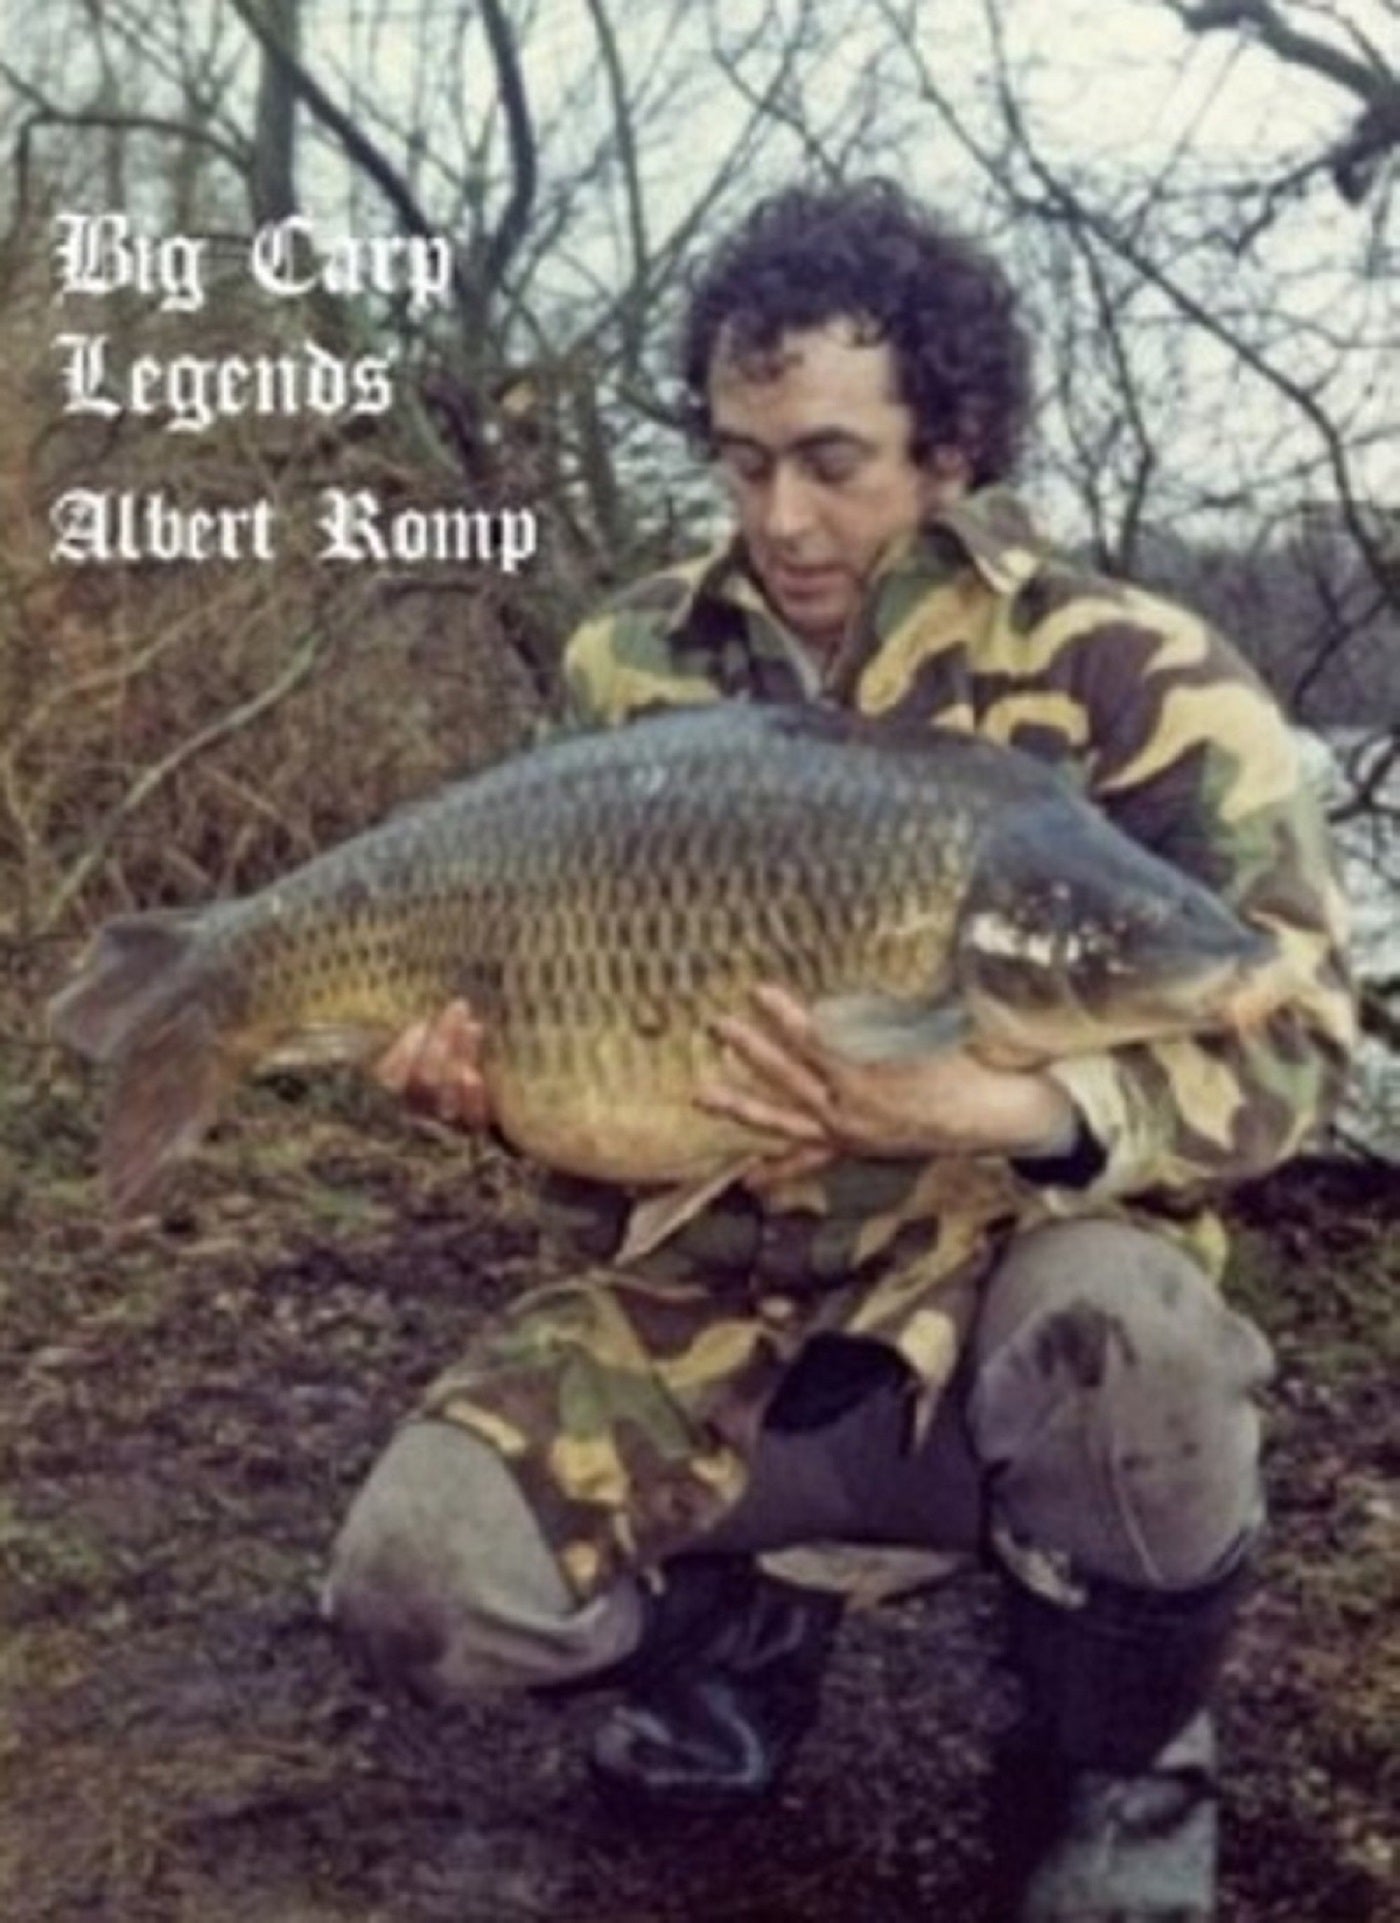 Big Carp Legends - Albert Romp